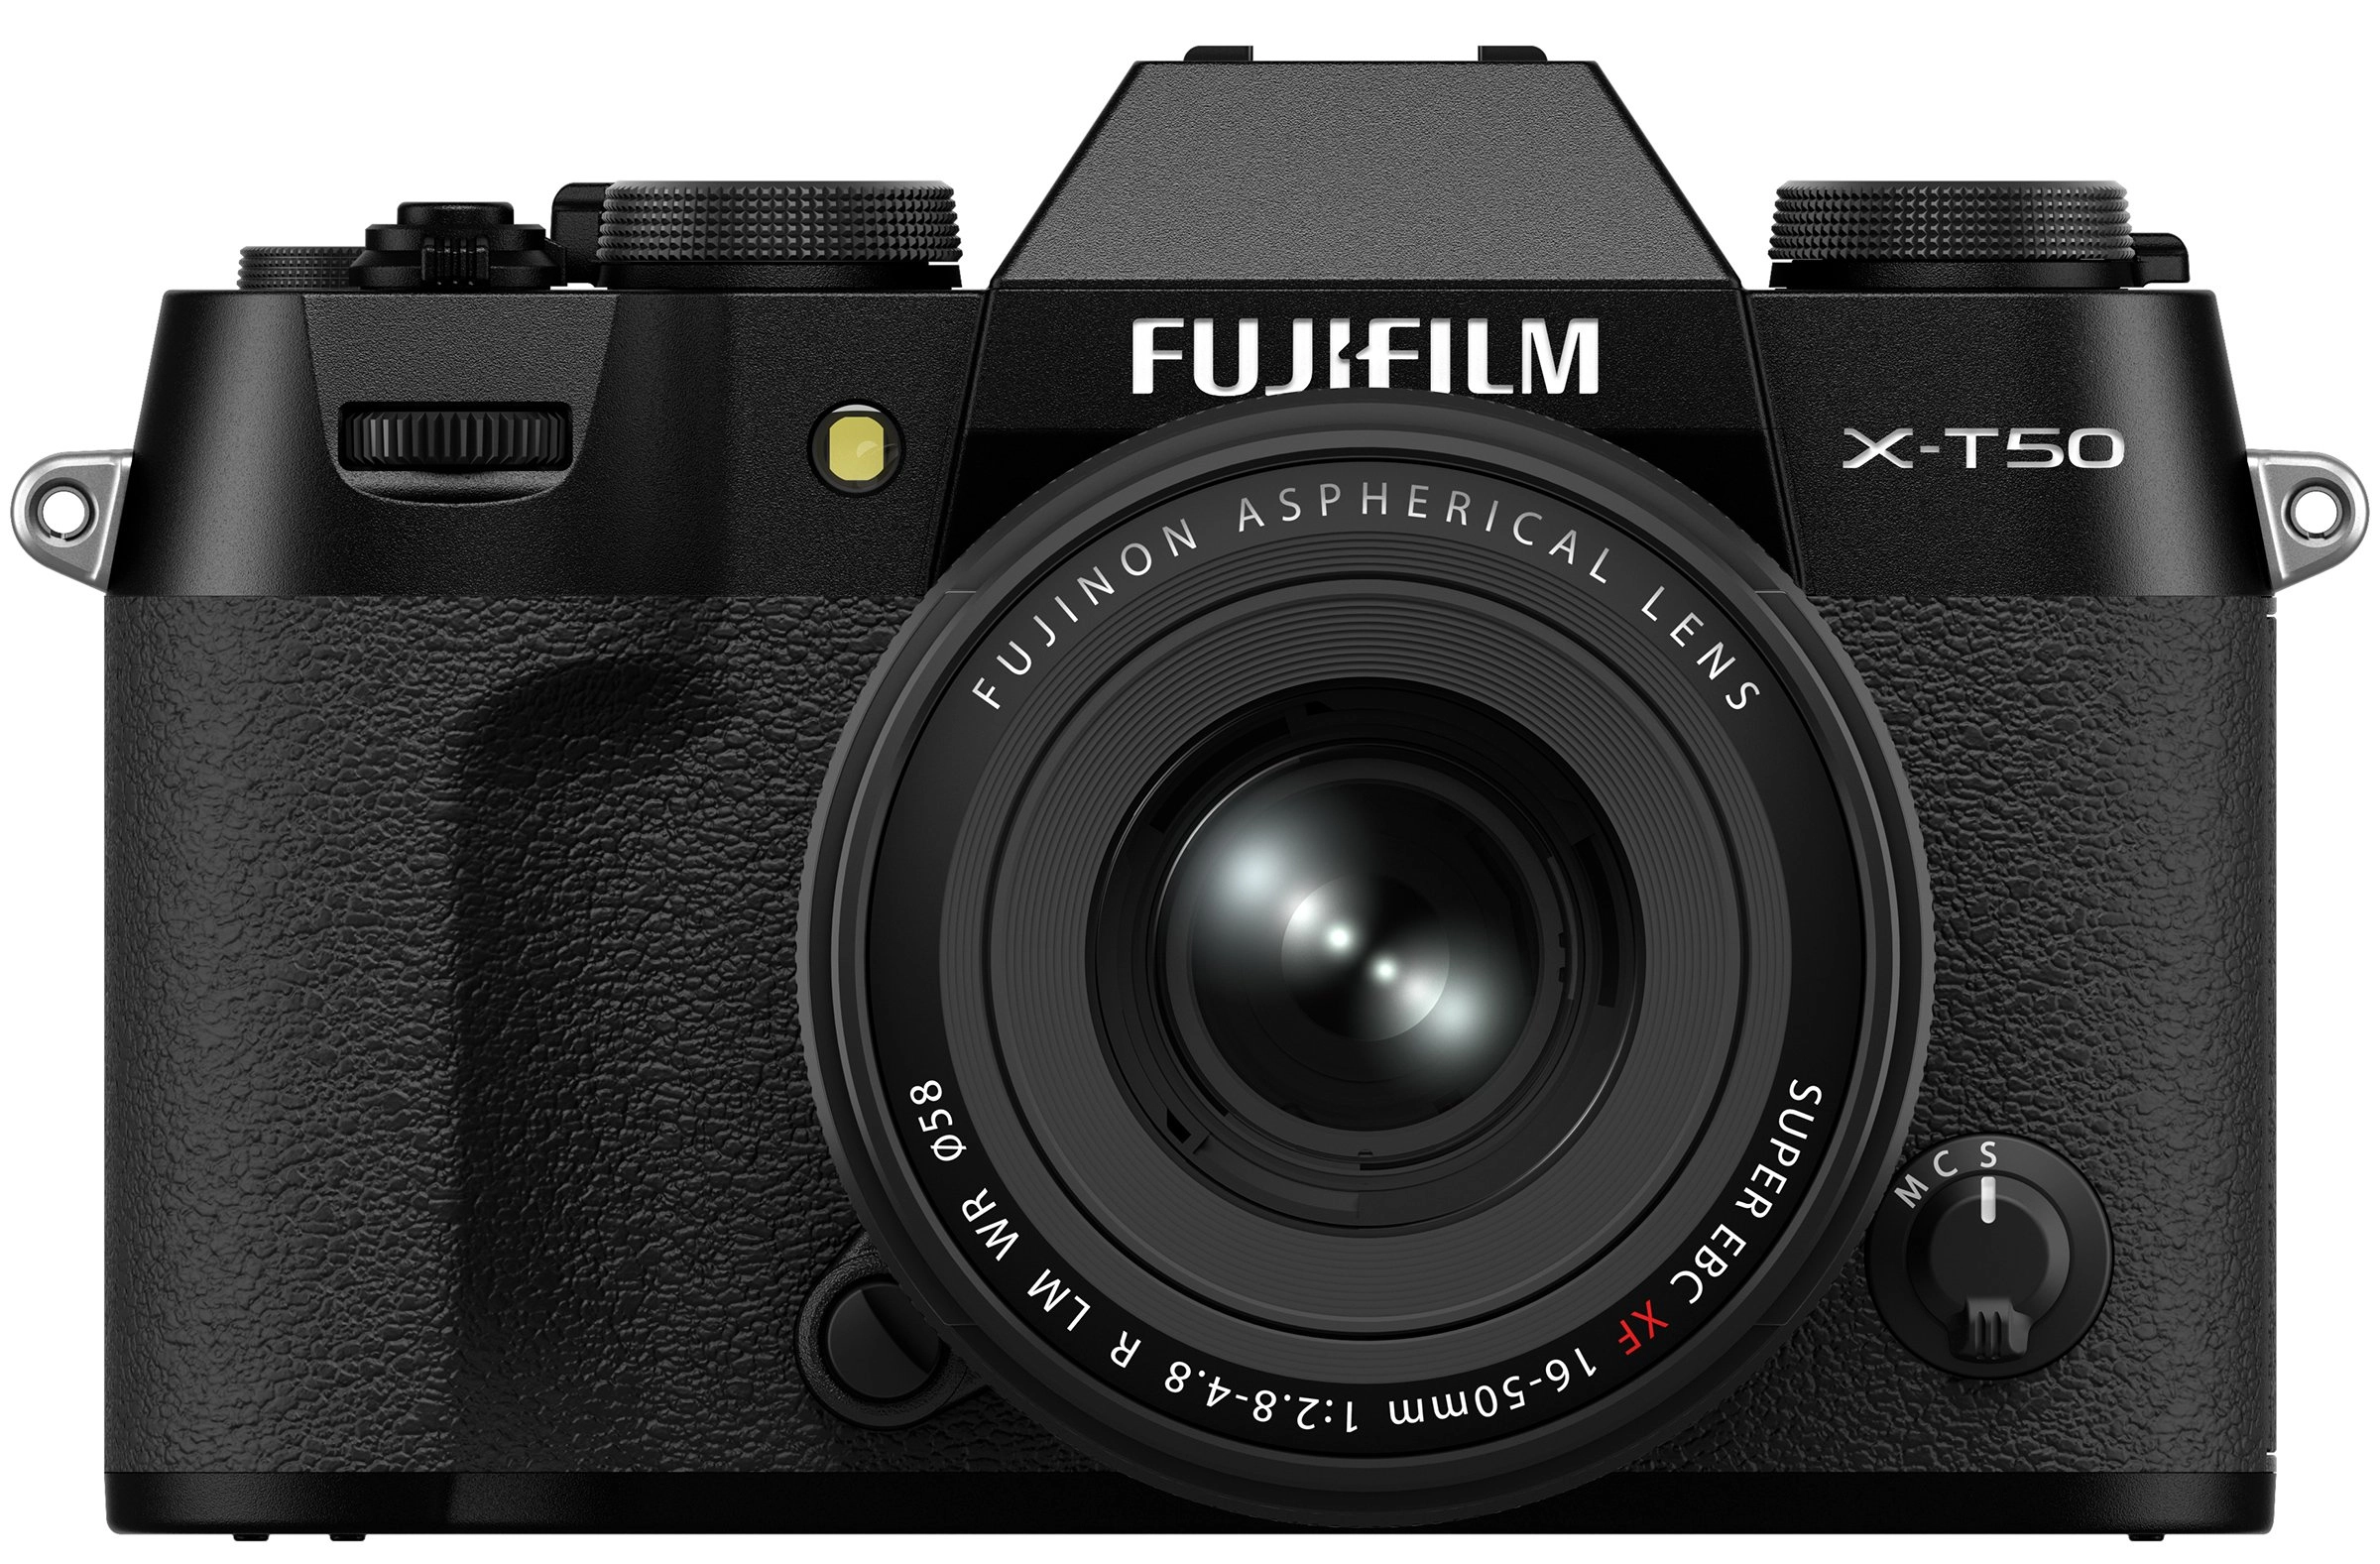 Fujifilm X-T50 cùng kit XF 16-50mm ra mắt, trang bị cảm biến 40.2MP sắc nét và IBIS lên đến 7 stop